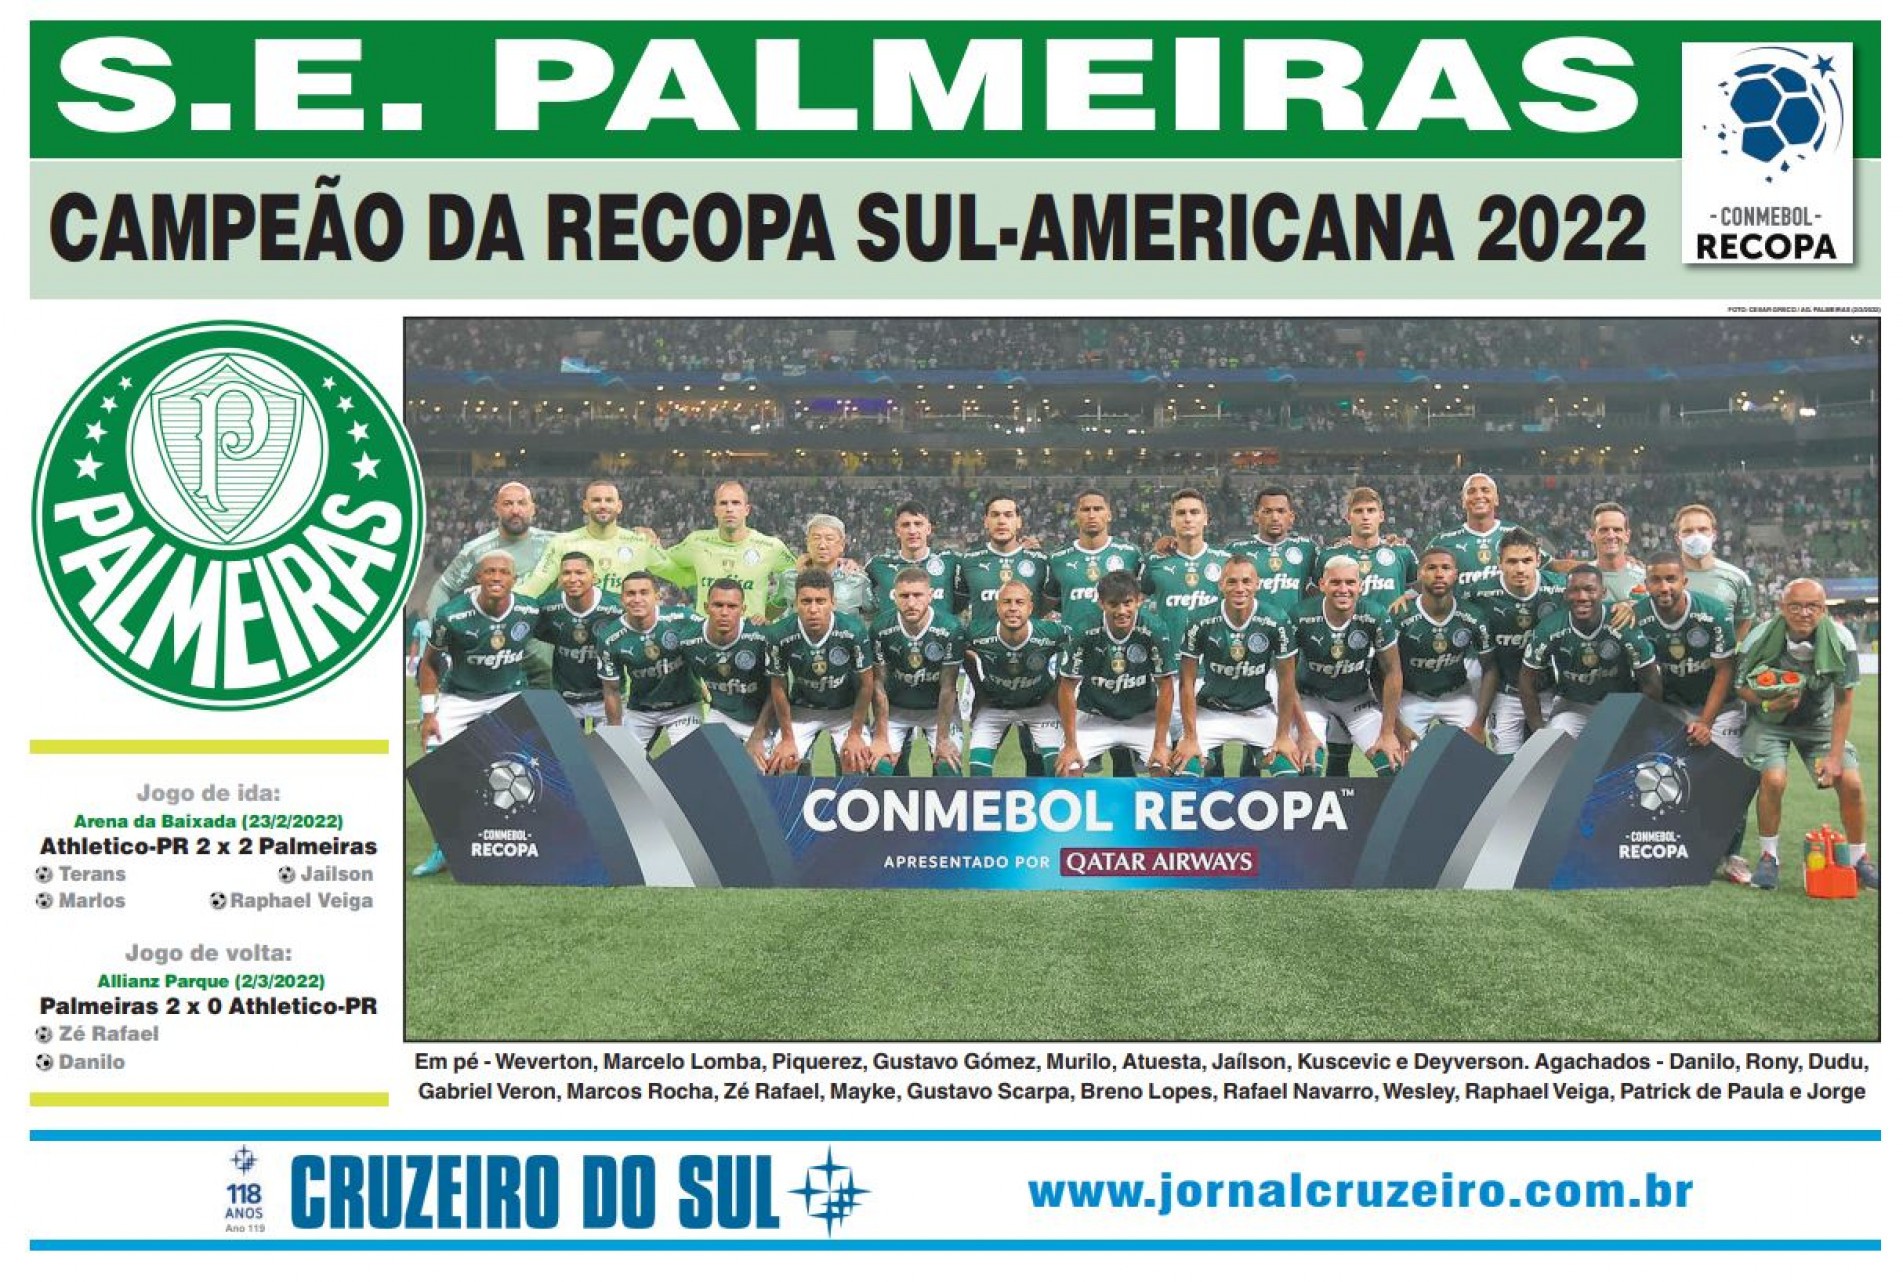 Revista Pôster Palmeiras - Verdão Campeão Paulista 2022